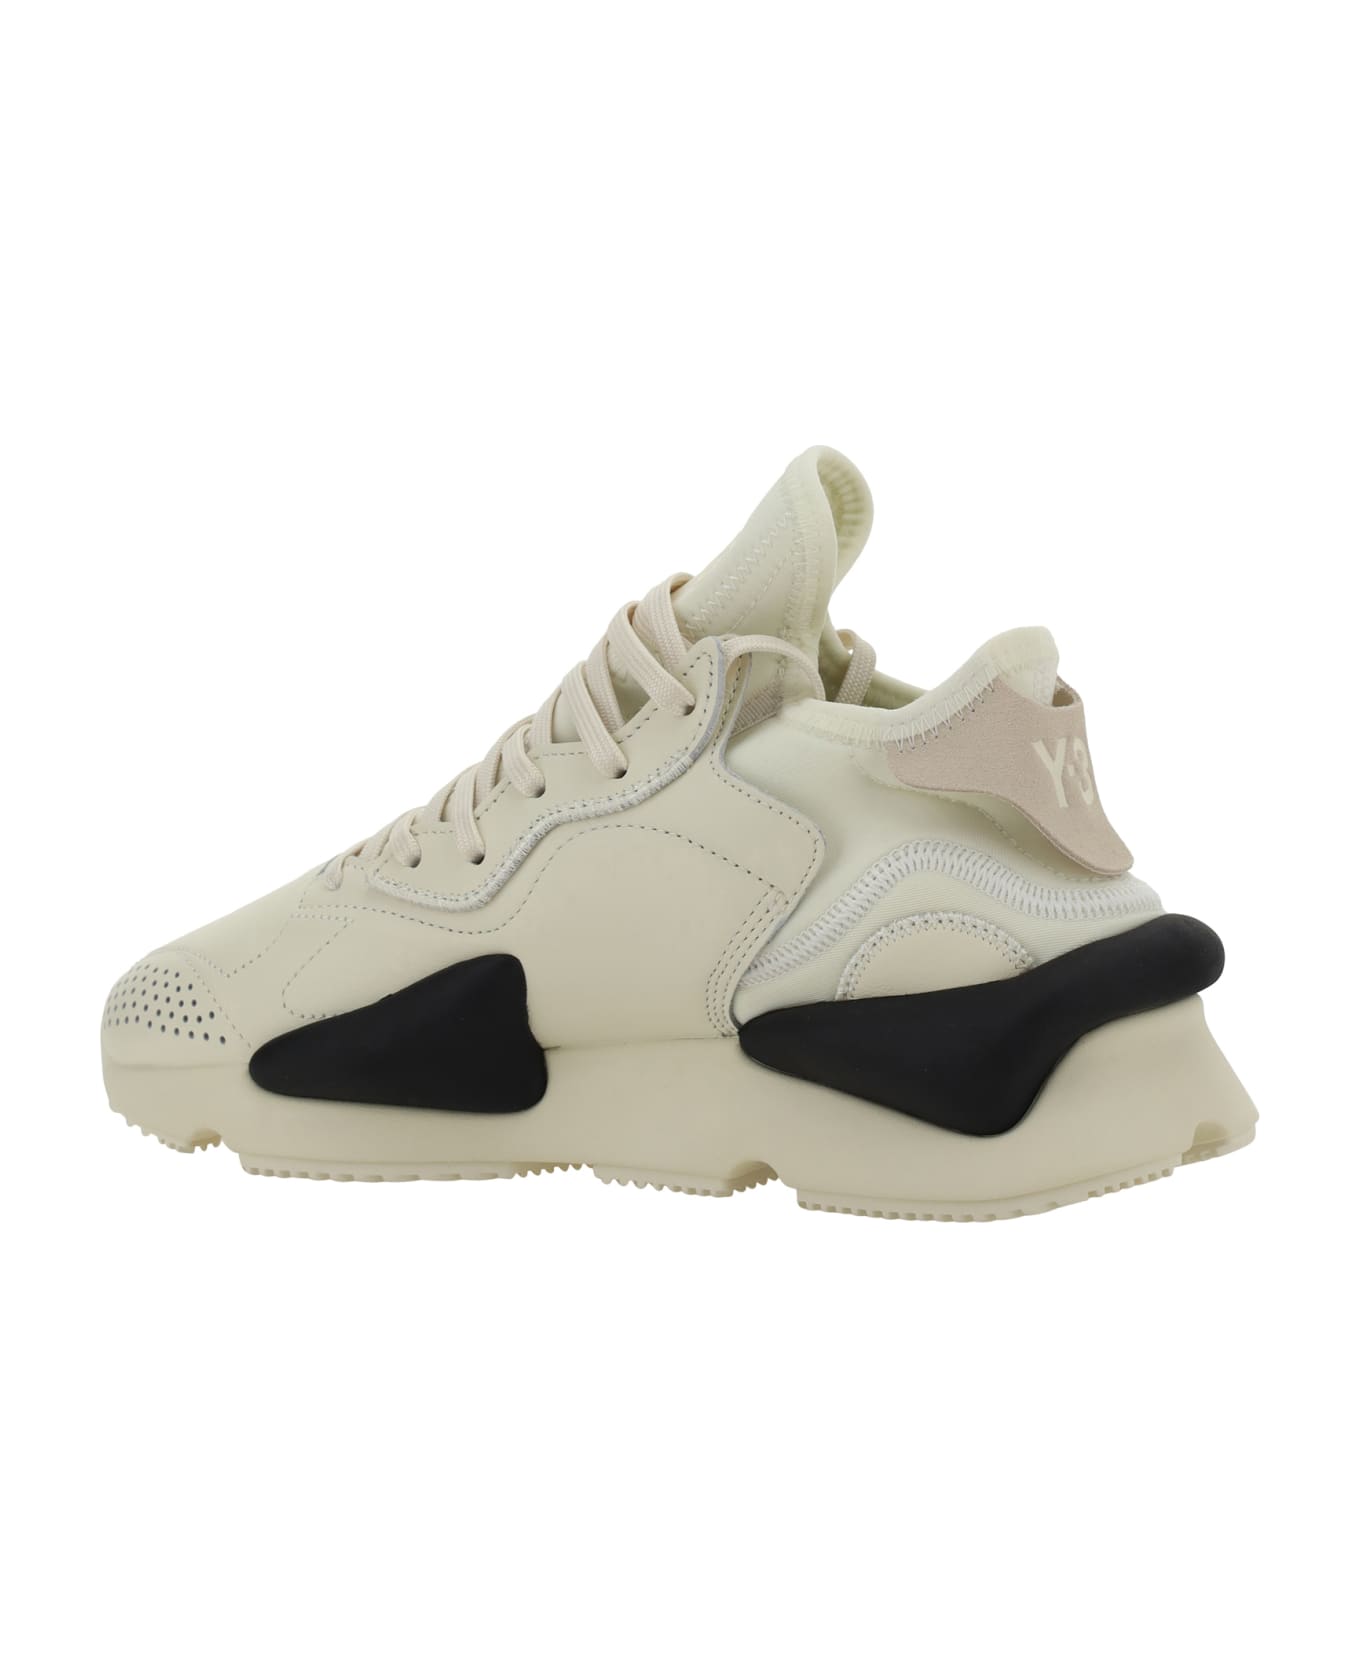 Y-3 Kaiwa Sneakers - Crewht/owhite/bla